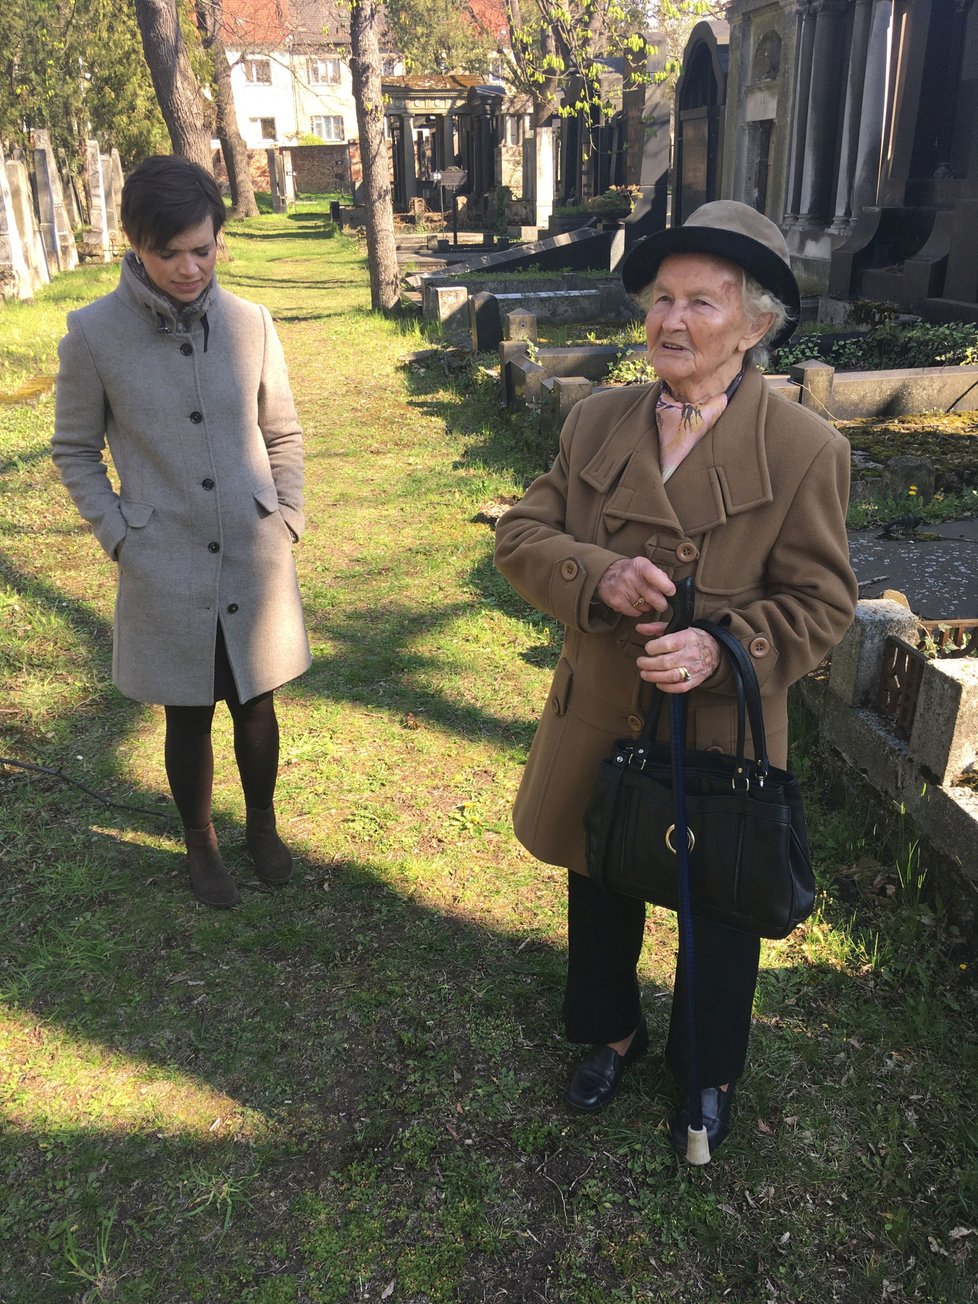 Prohlédnout si novotou zářící hrobku přišla i Marie Straková (93), dcera vrchního zahradníka u rodiny Stiassni.